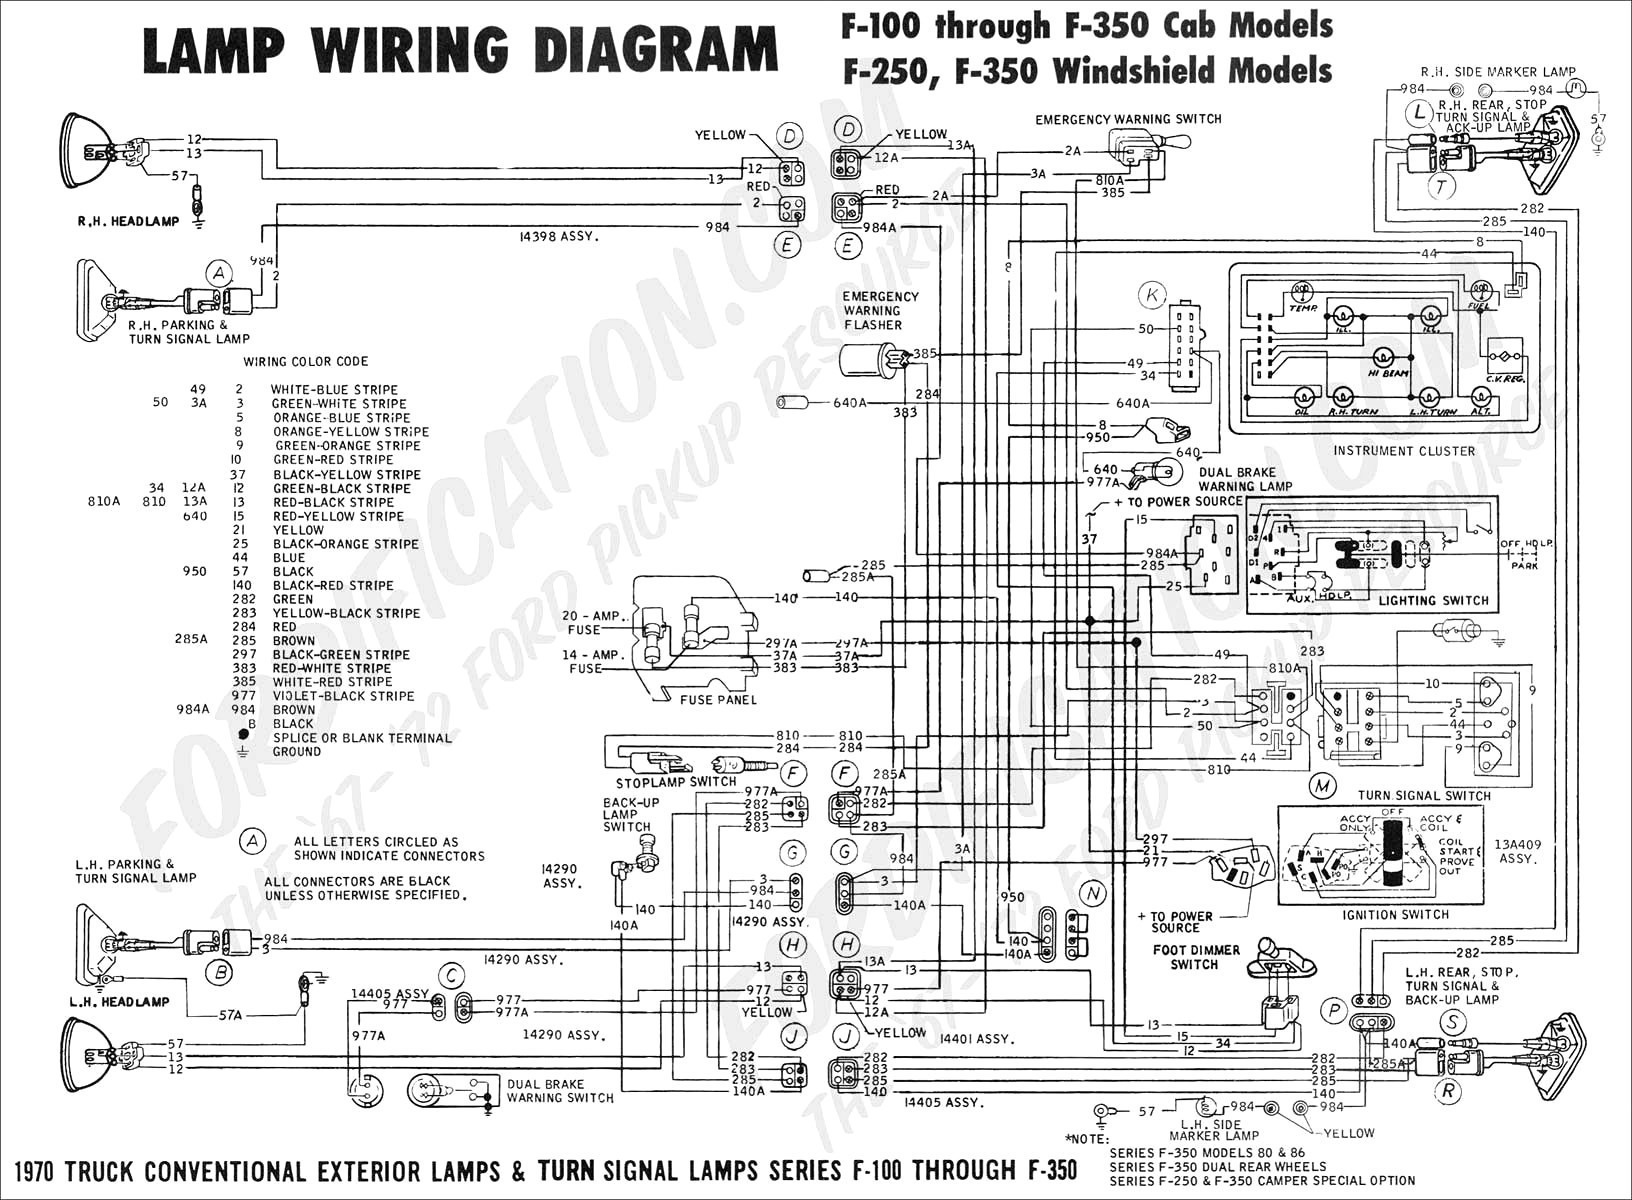 Suzuki Bandit Wiring Diagram 1937 ford Vin Number Location 1965 Mustang Wiring Diagram 1948 ford Of Suzuki Bandit Wiring Diagram